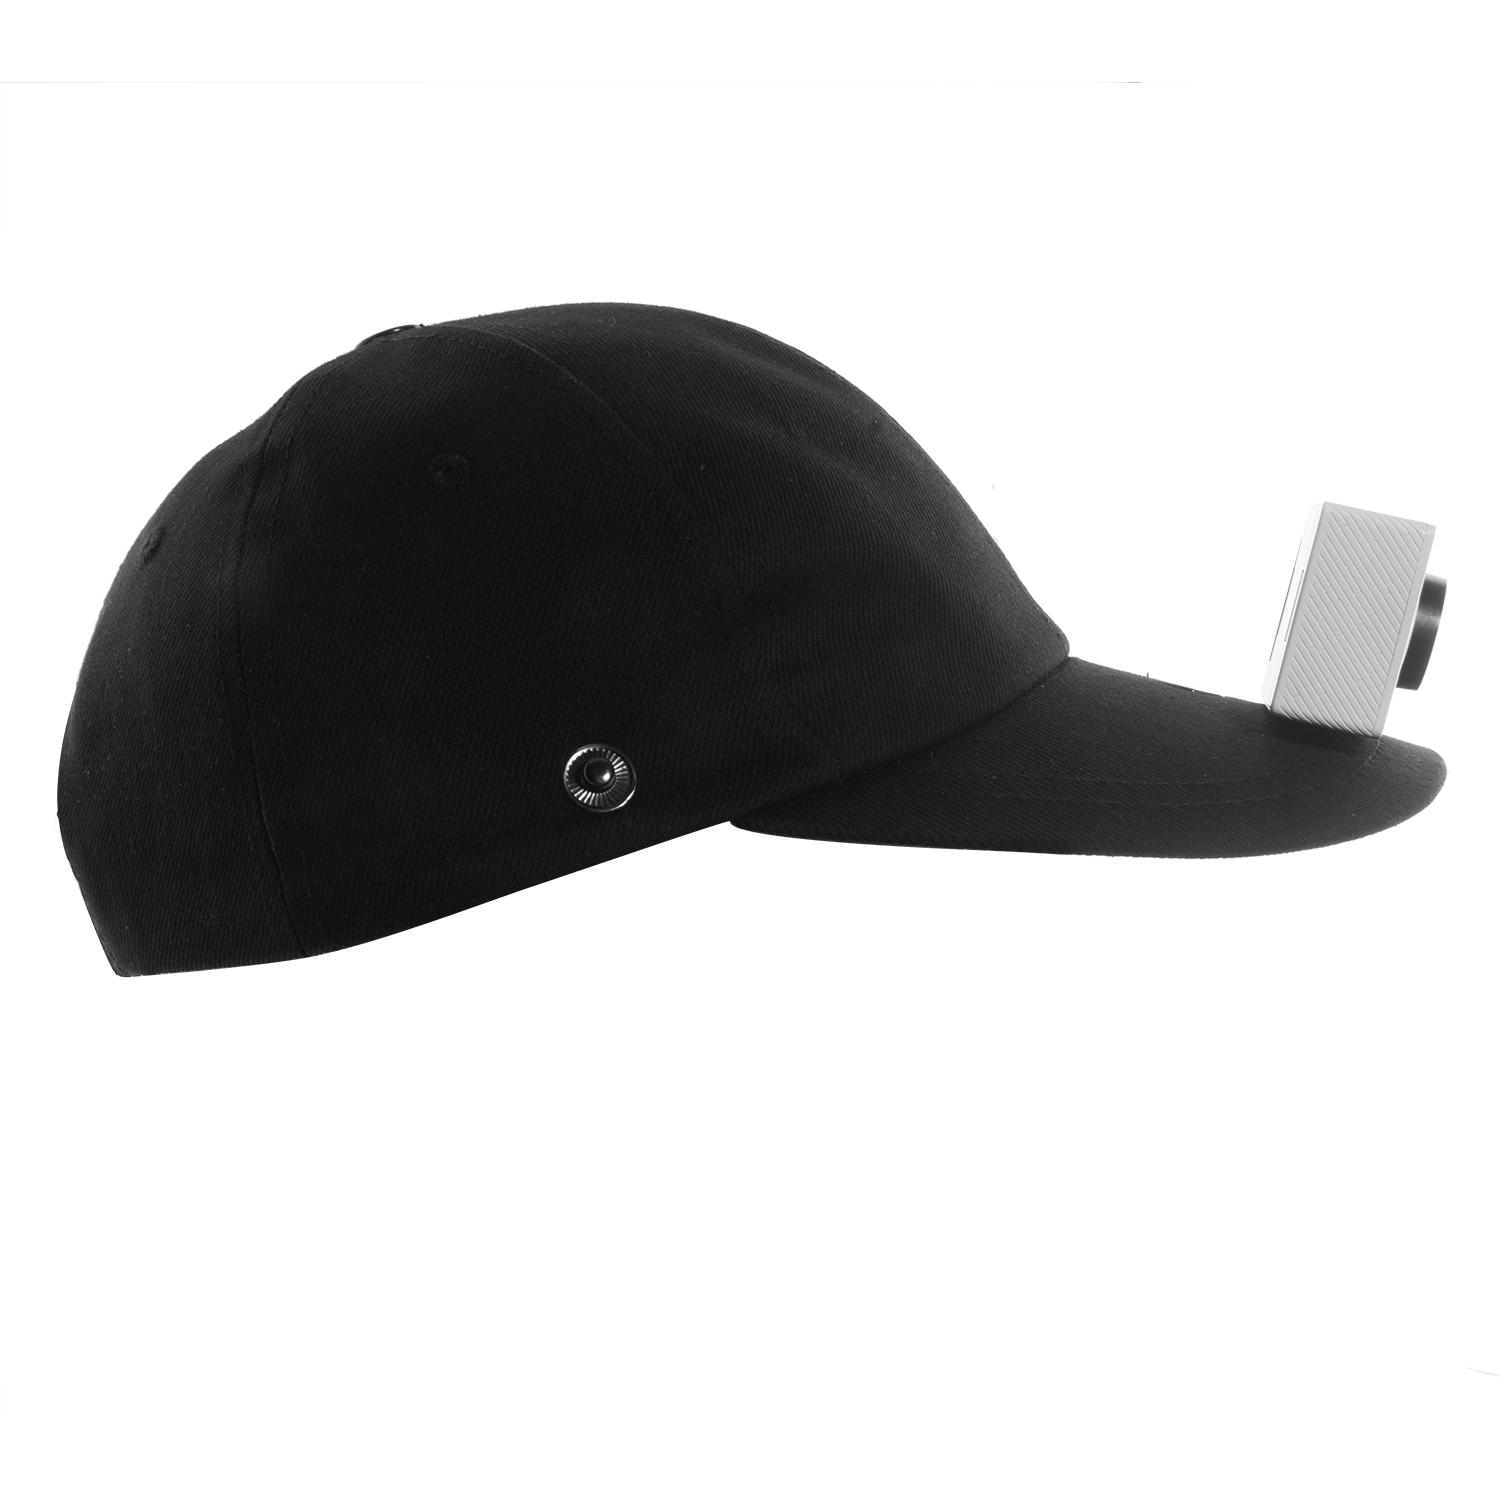 کلاه نیو ویژن مدل Cap مناسب برای دوربین های ورزشی